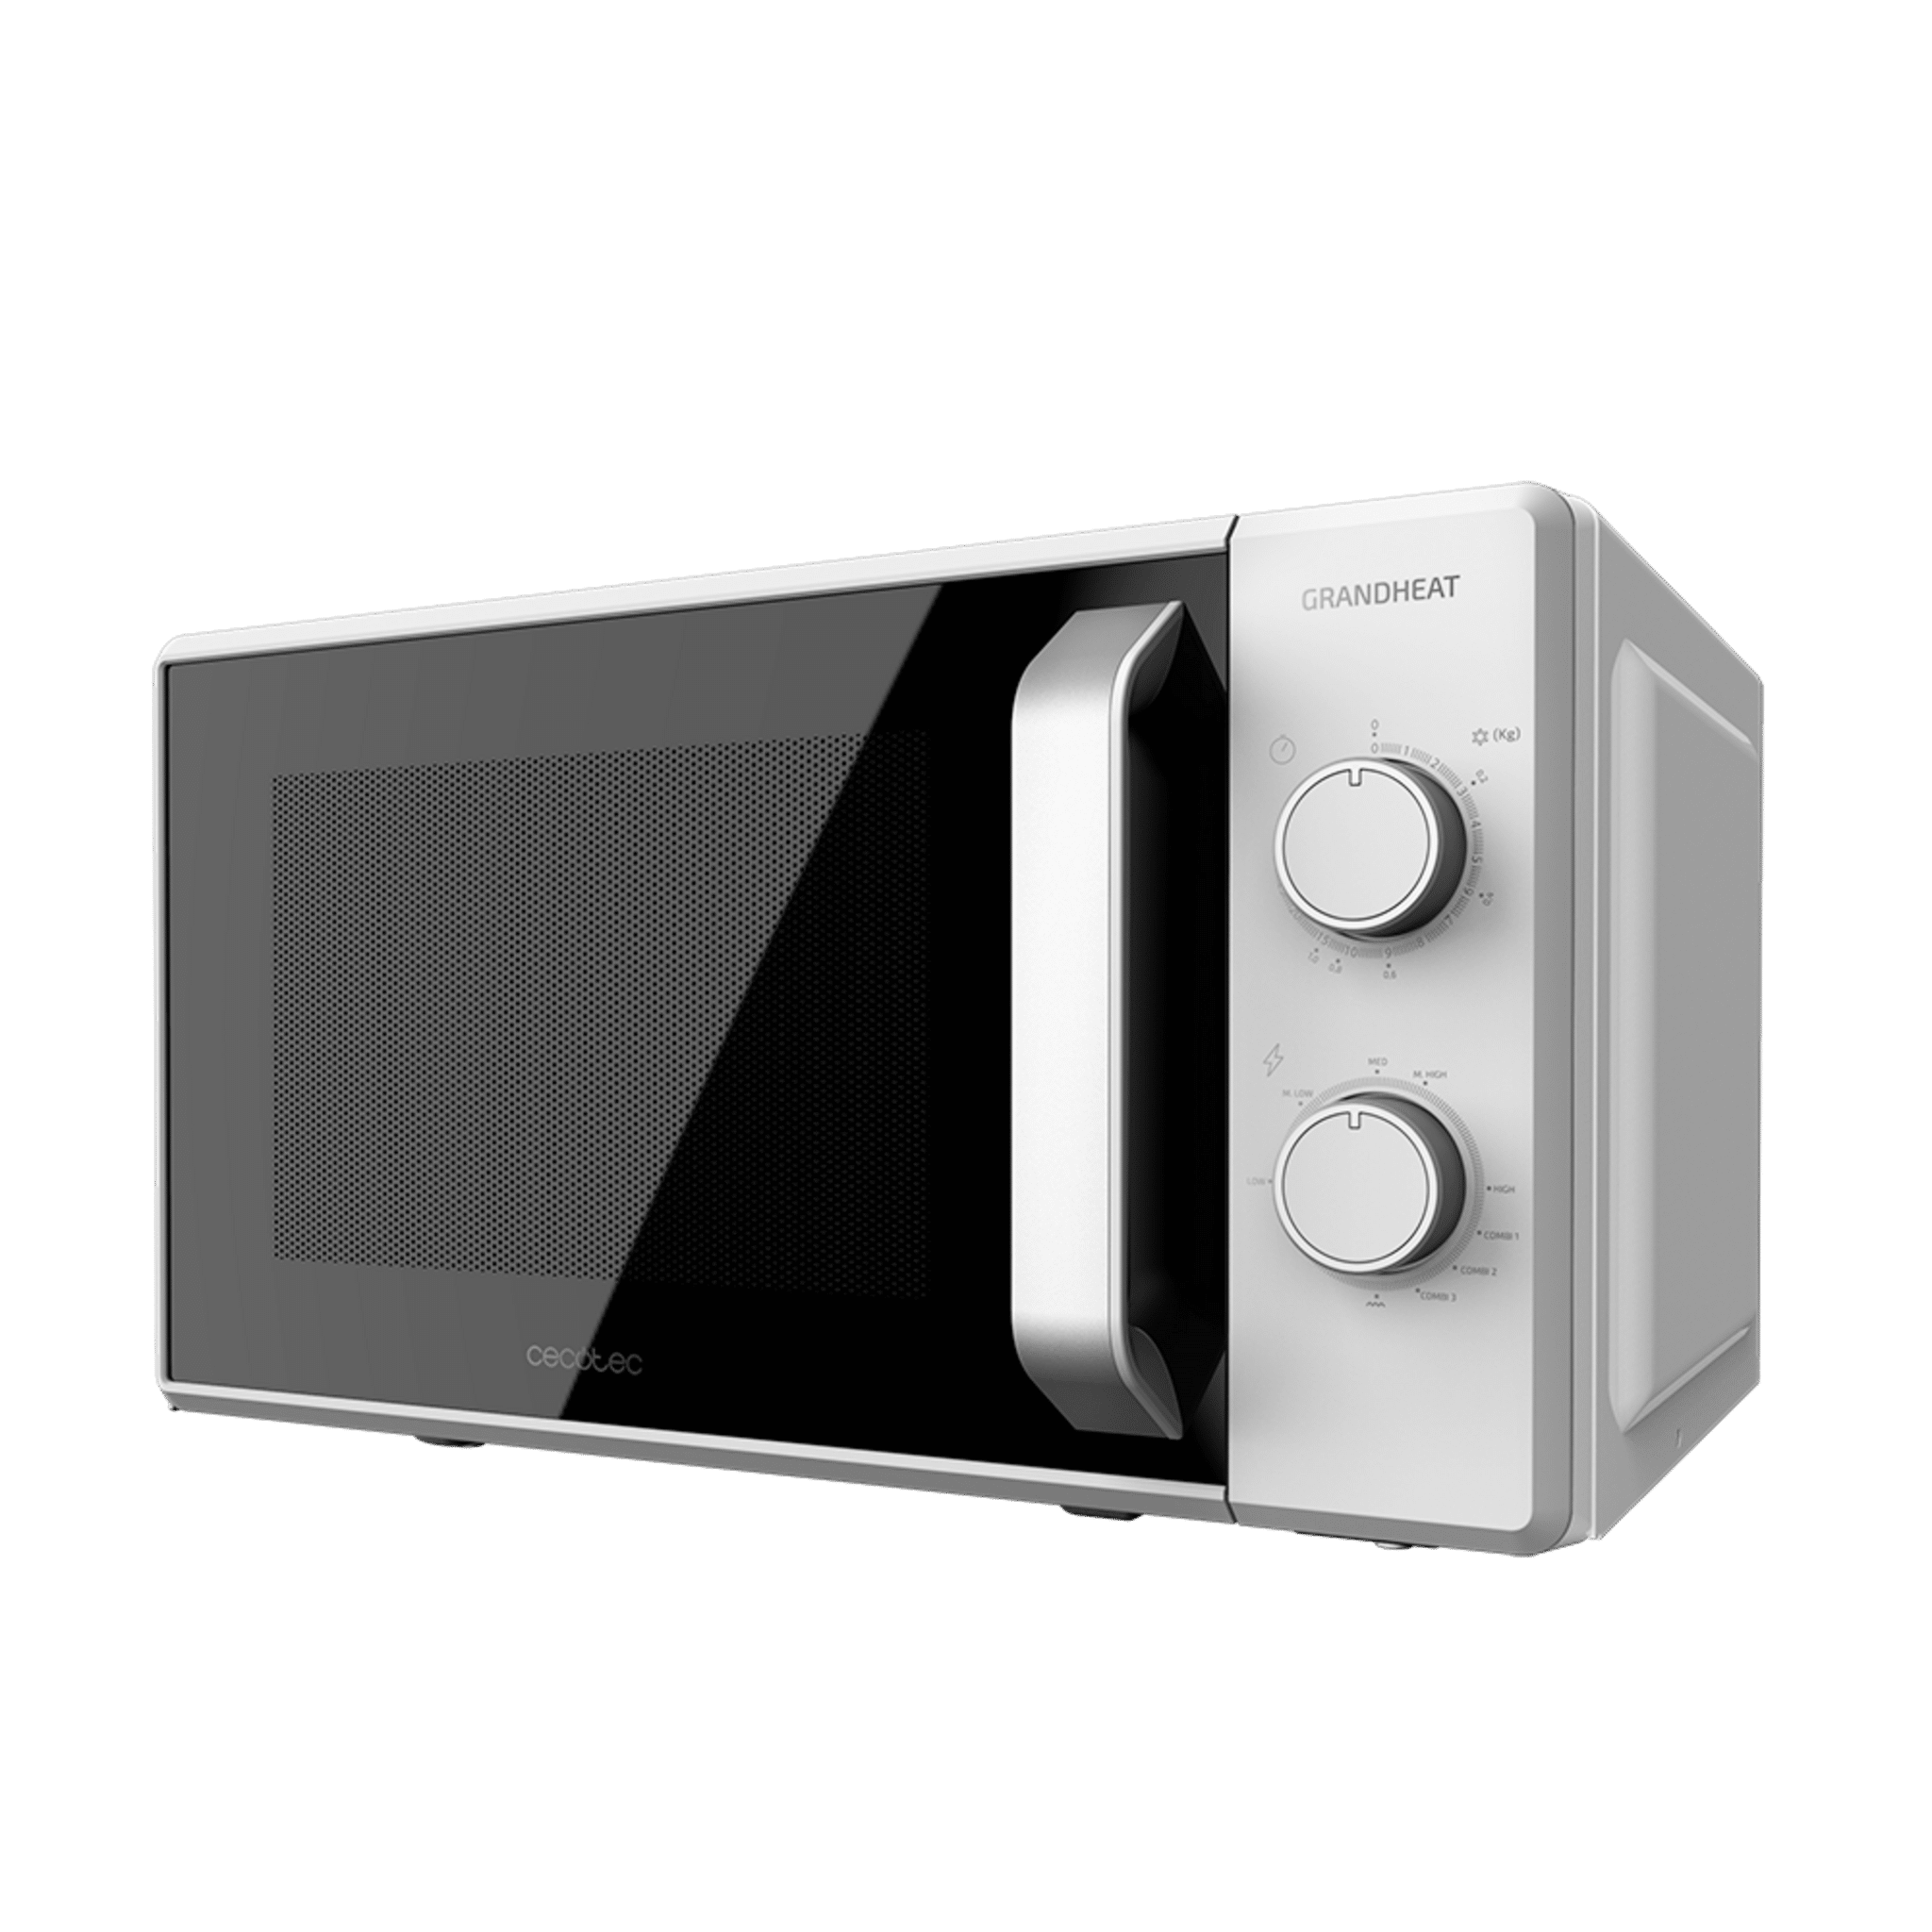 Cecotec Microwave Grandheat 4110 mit 23 l Inhalt, Grill, 700 W Leistung, 3D-Wave-Technologie und elegantem Design mit Full Crystal-Tür.